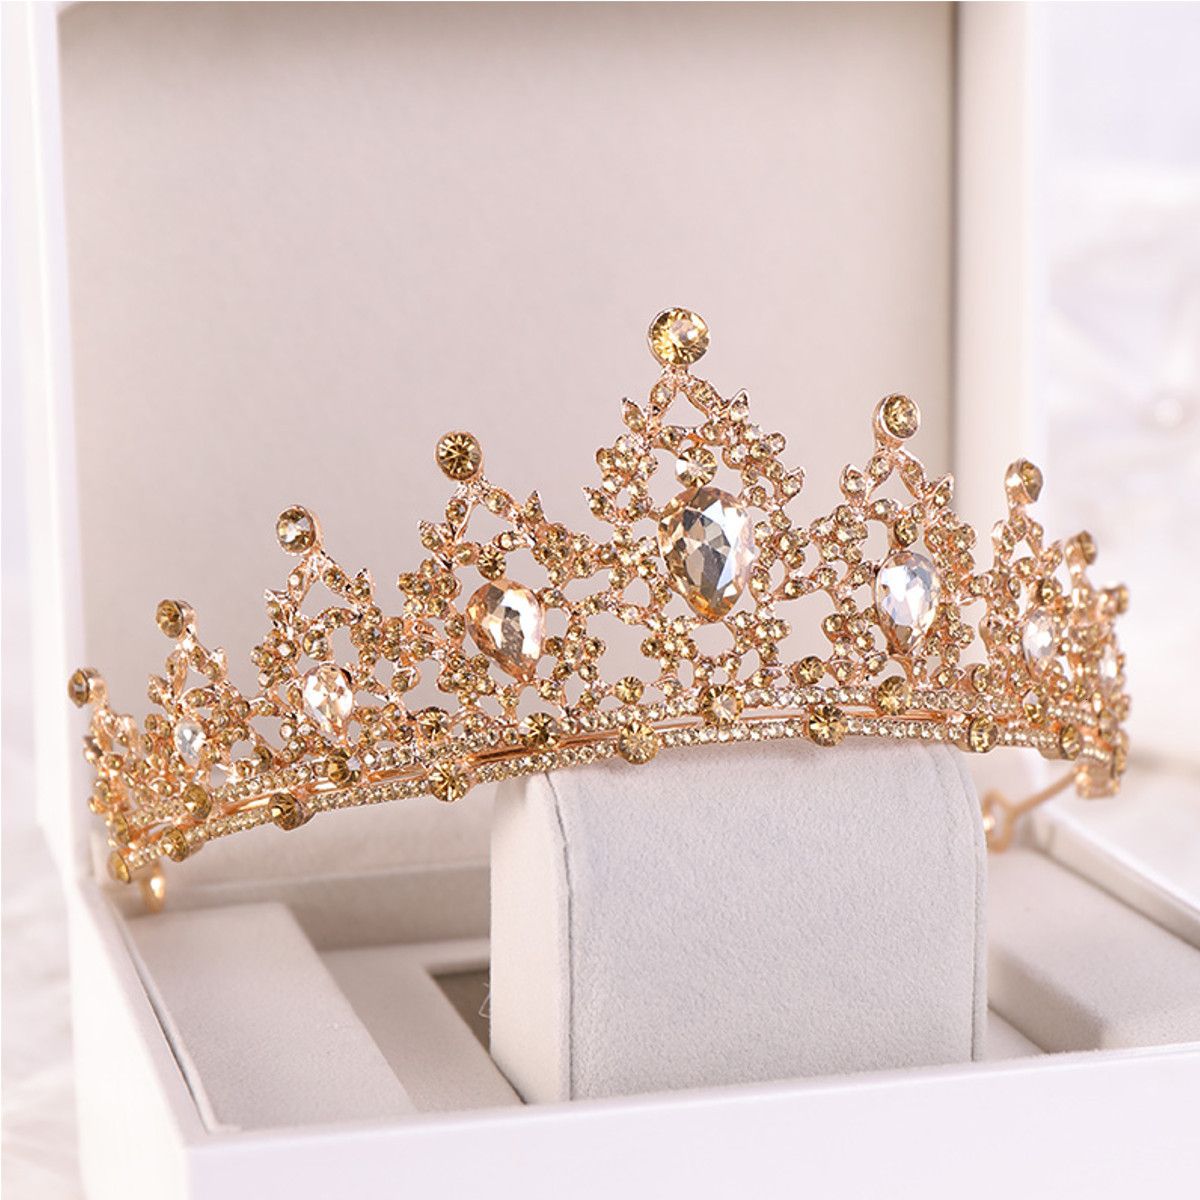 ELEGANTE TIARA joyería de boda cabello aro accesorios de pelo tiara oro Nuevo